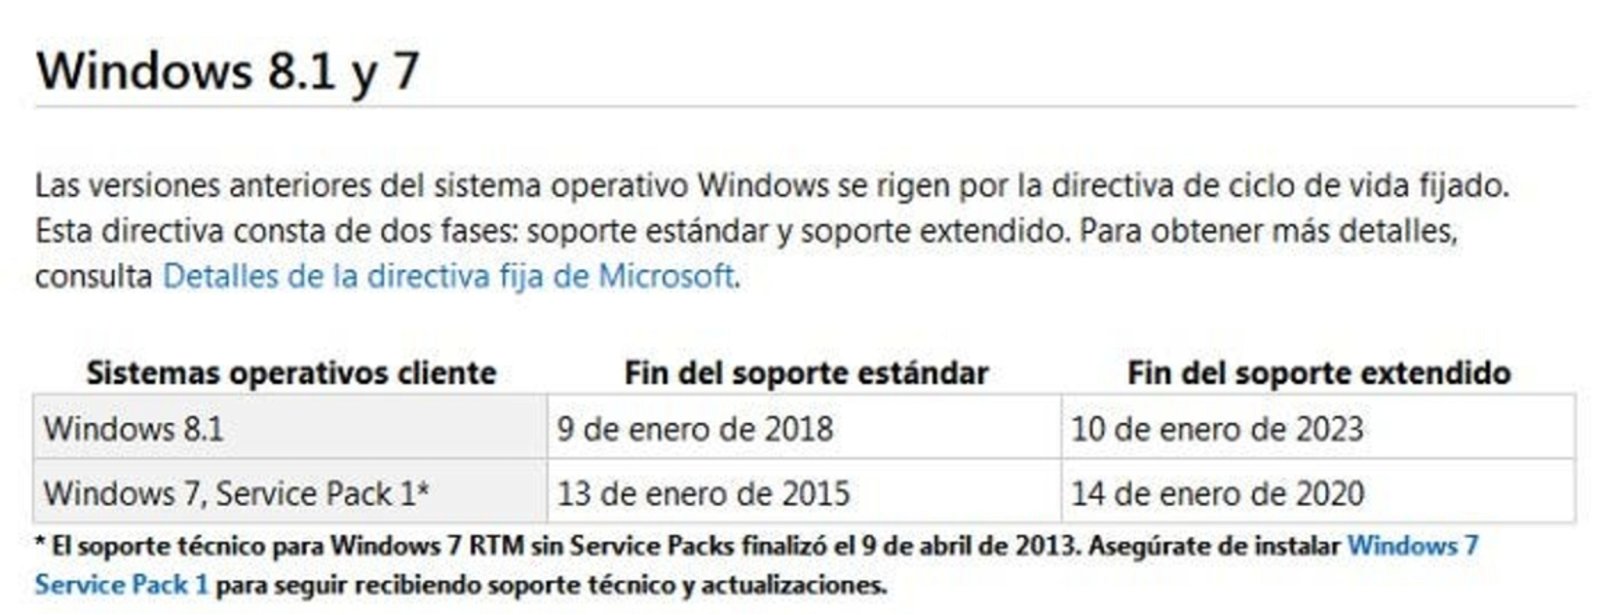 En aproximadamente un año y medio, Windows 7 será un sistema obsoleto